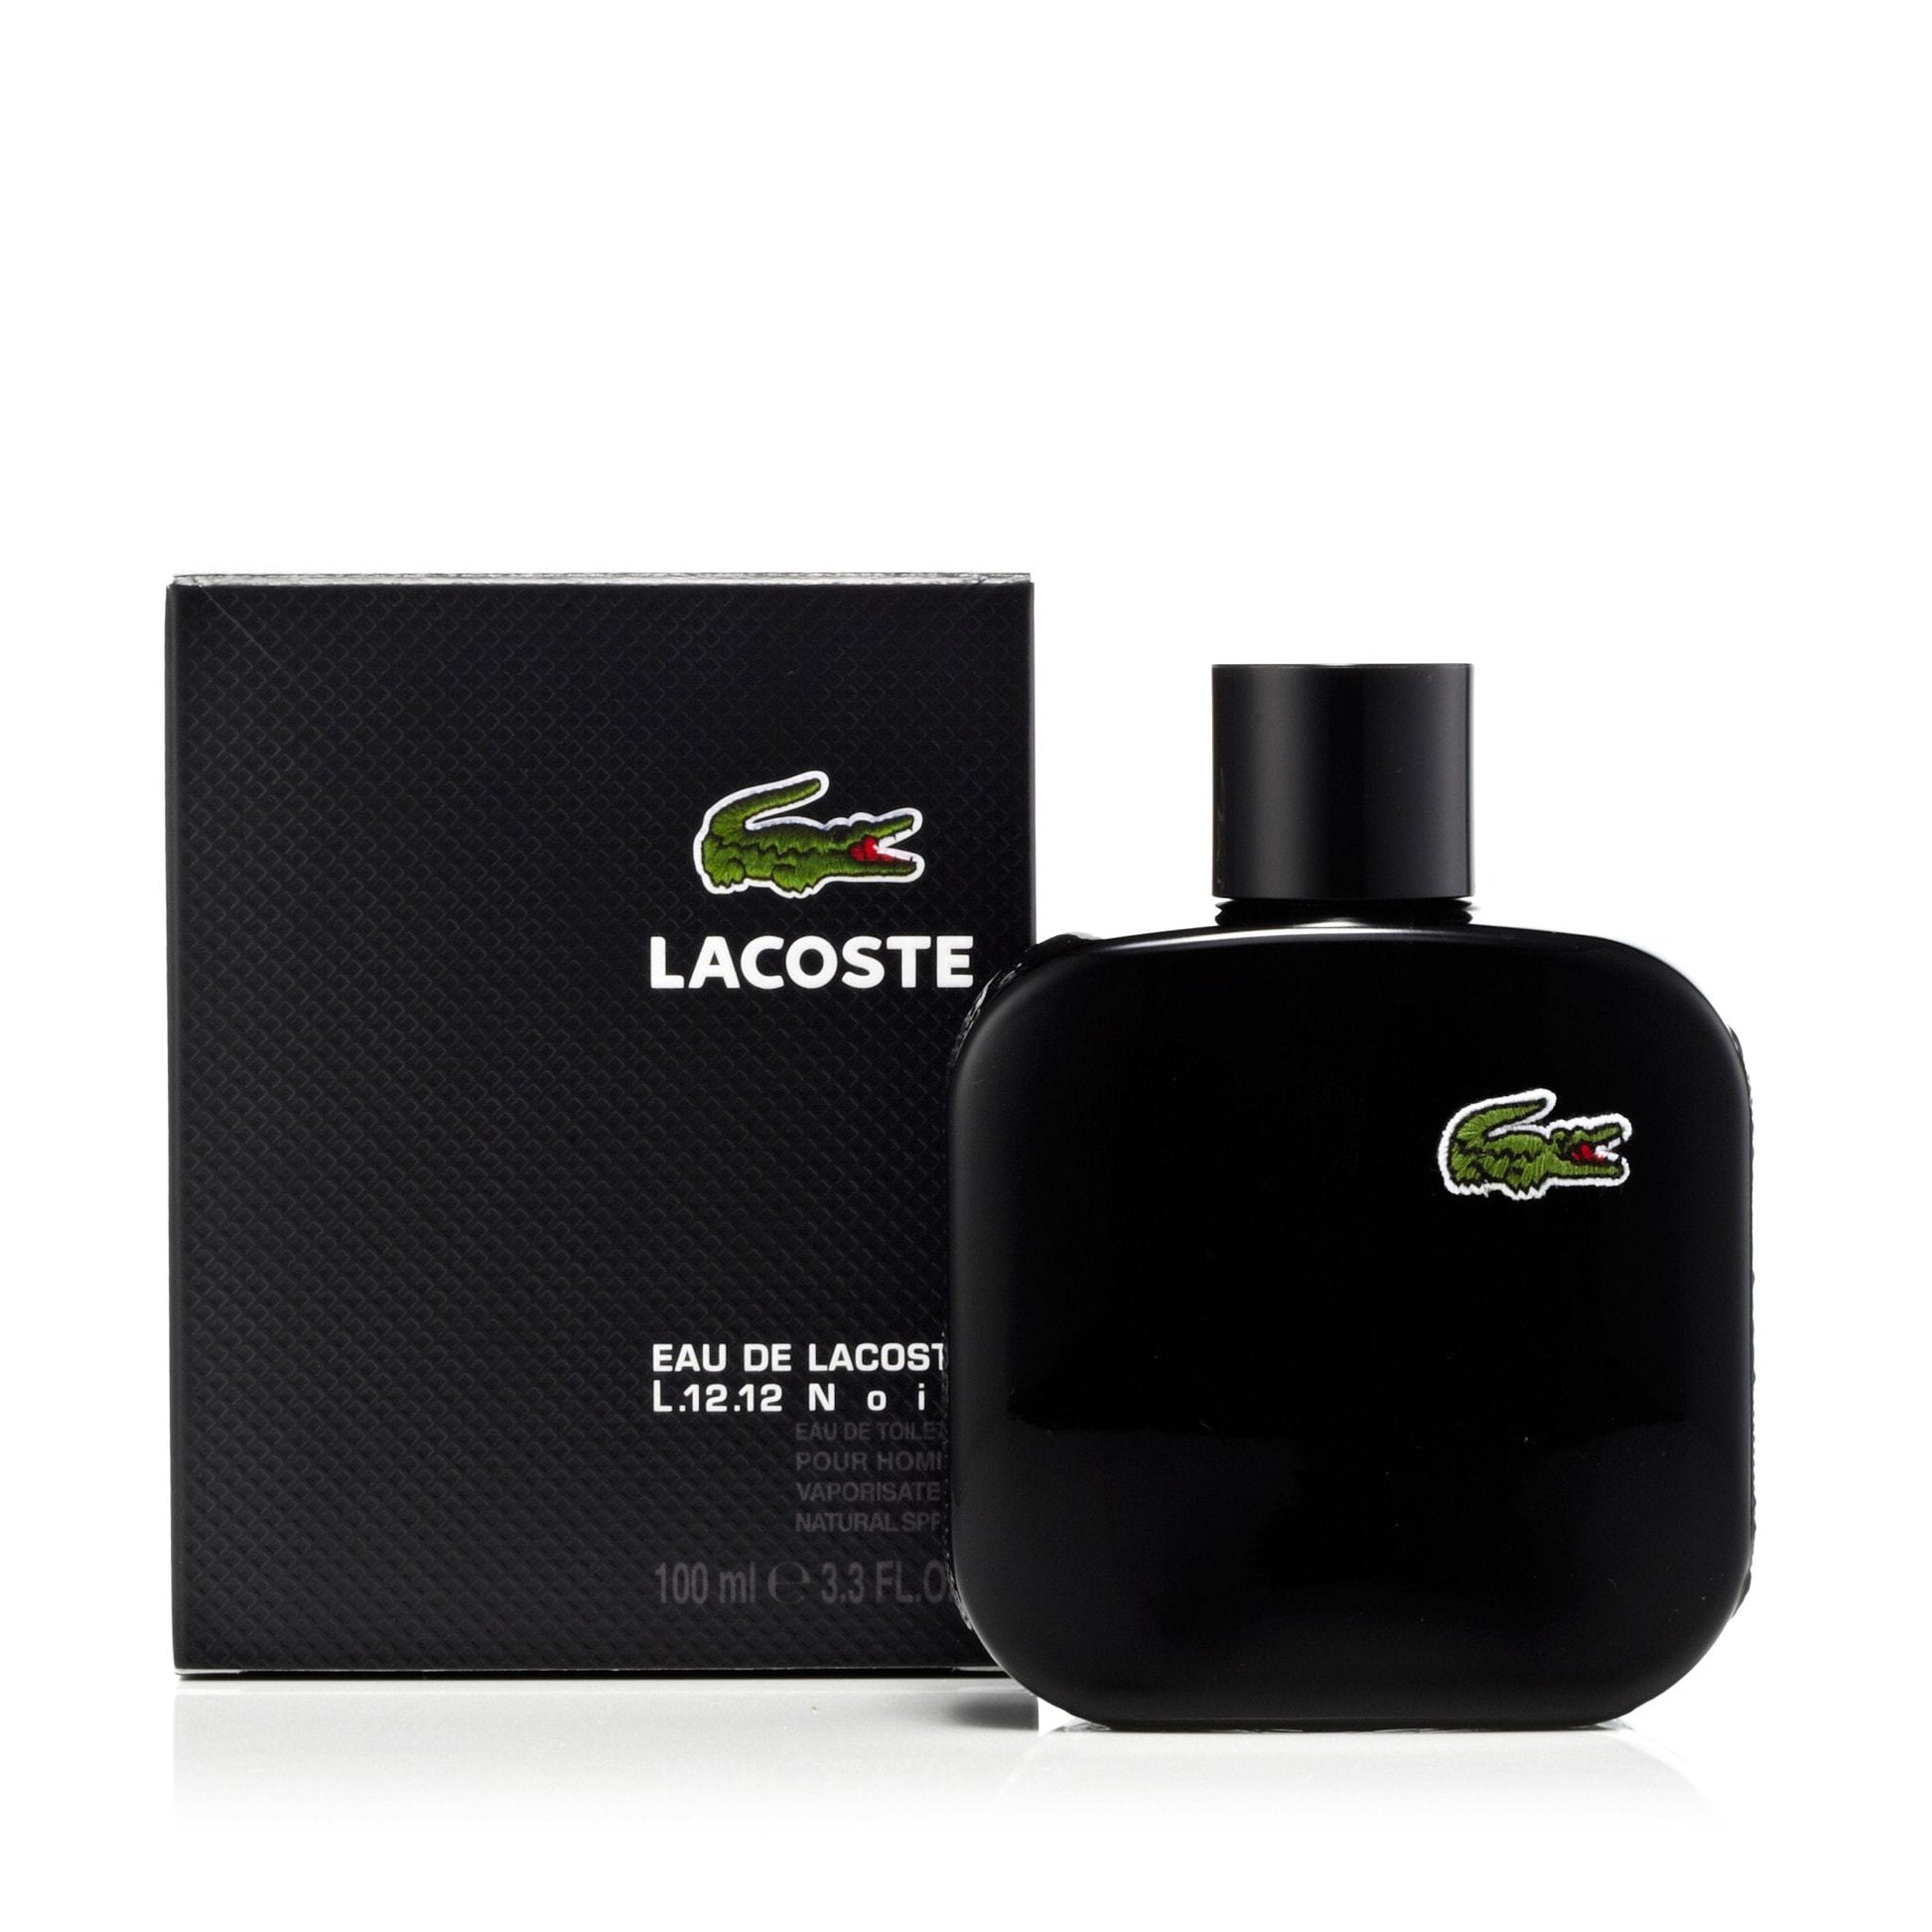 L.12.12 Noir Eau de Toilette Spray for Men by Lacoste, Product image 7